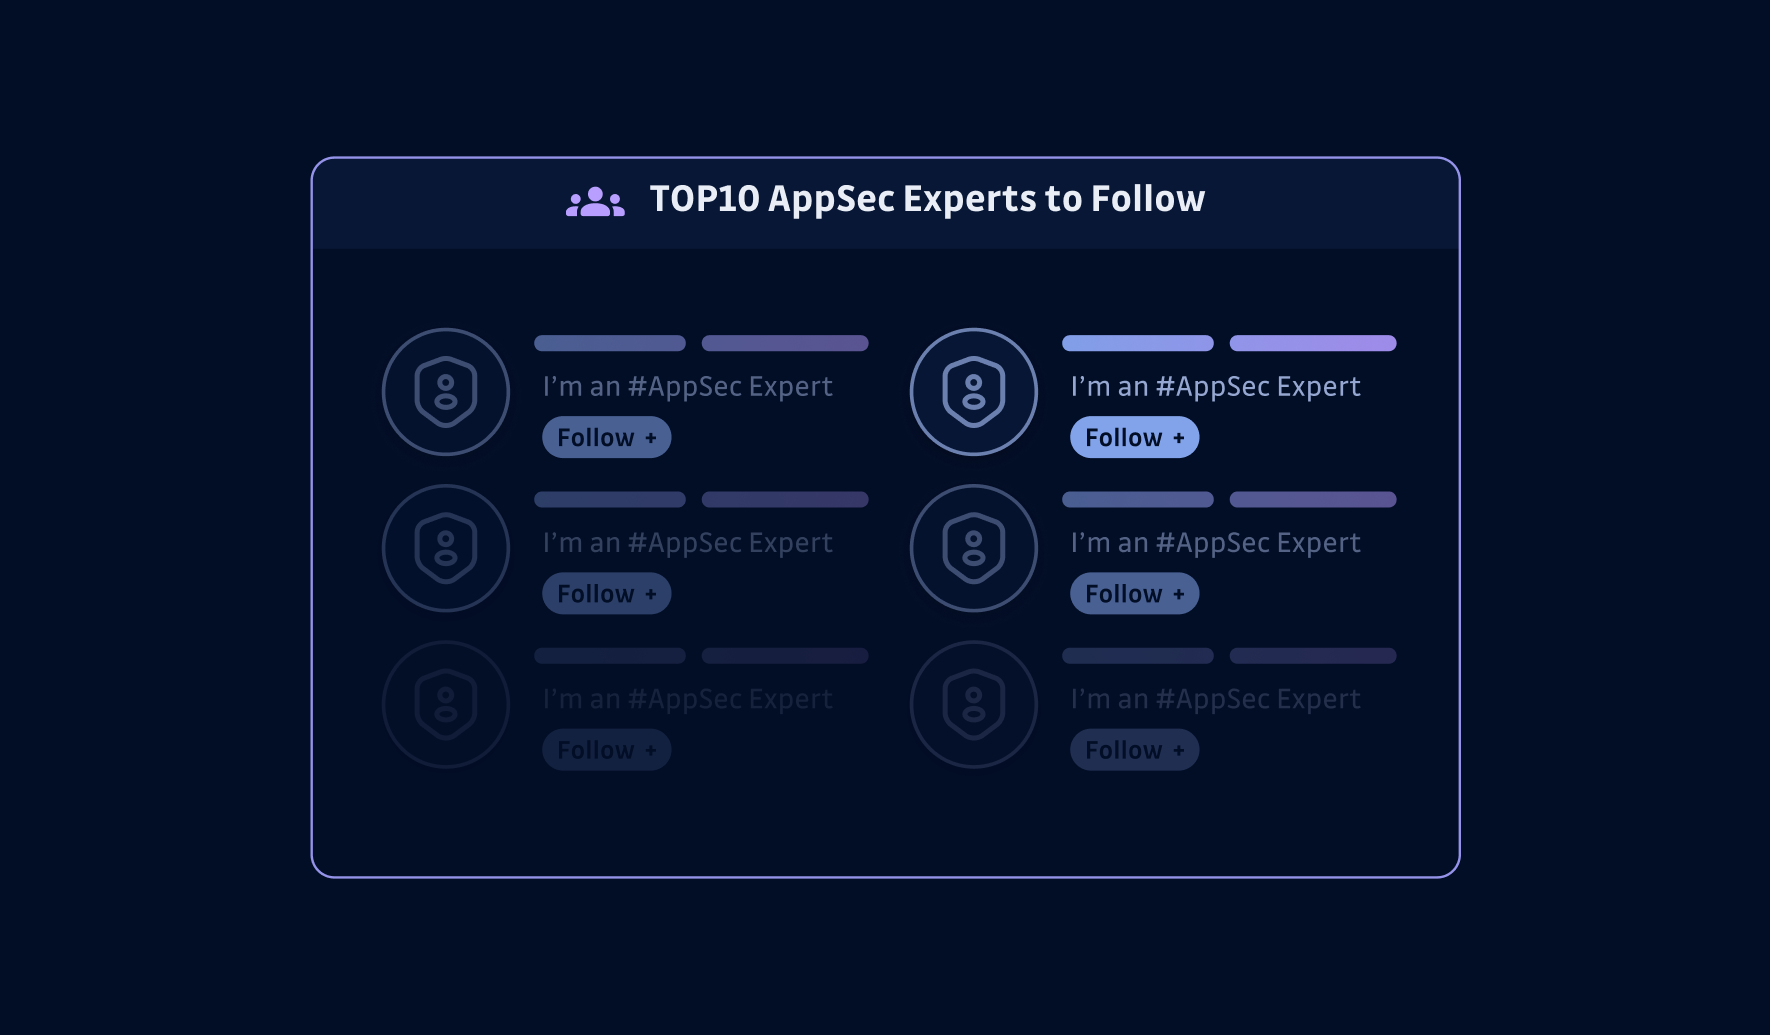 Top 10 AppSec Experts You Should Follow